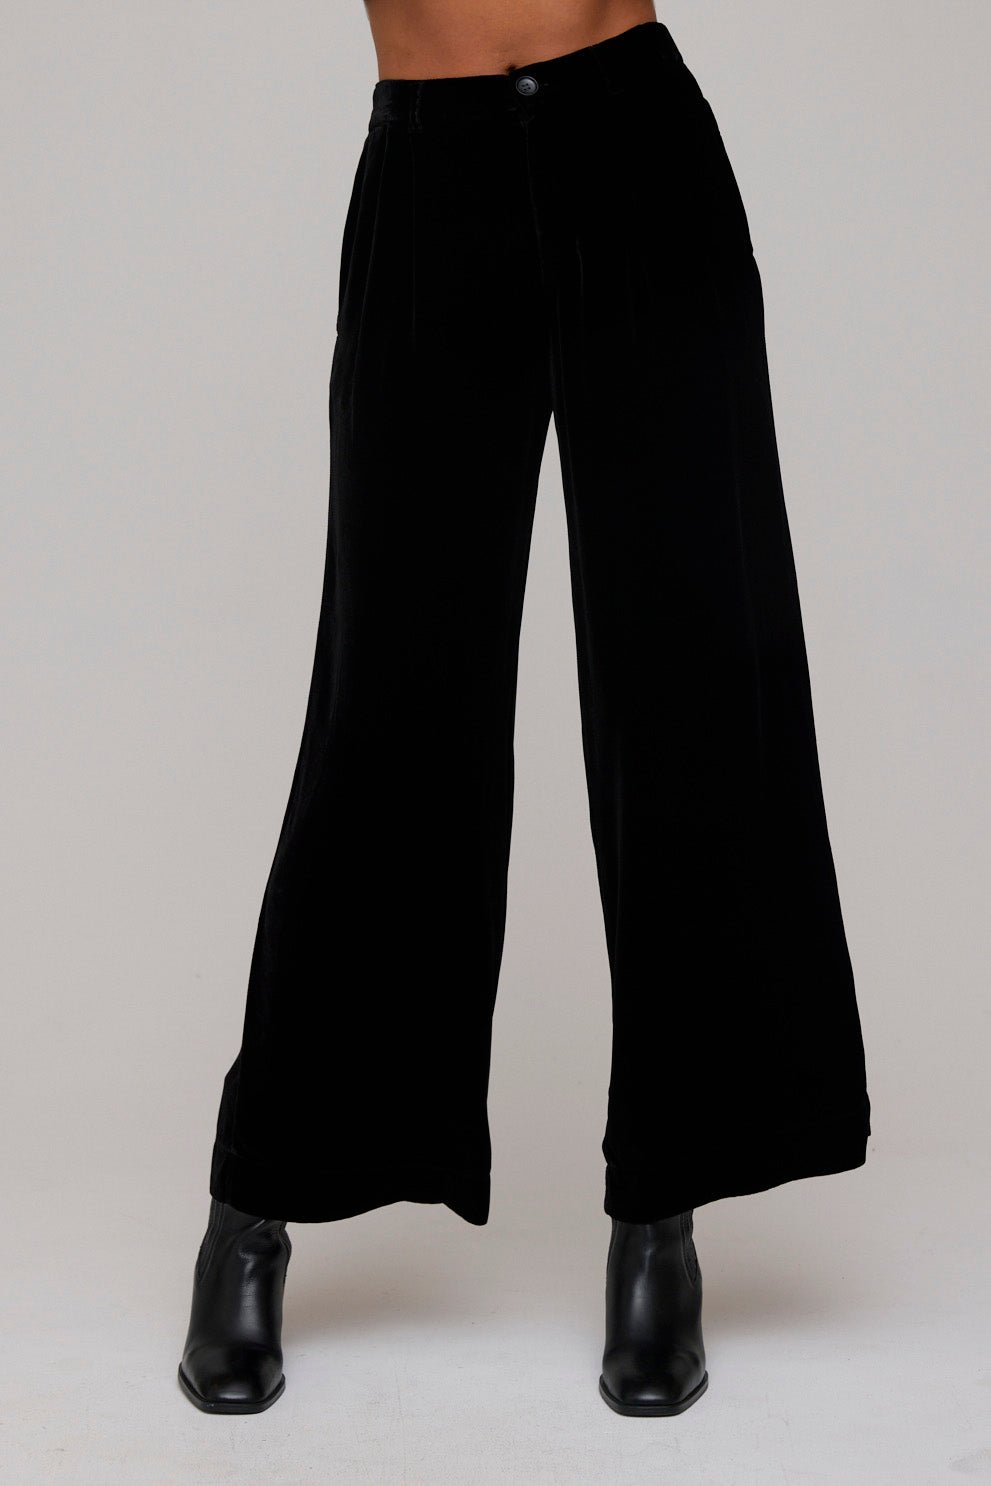 https://www.belladahl.com/cdn/shop/products/velvet-pleated-wide-leg-trouser-black-577149_1080x.jpg?v=1692966232